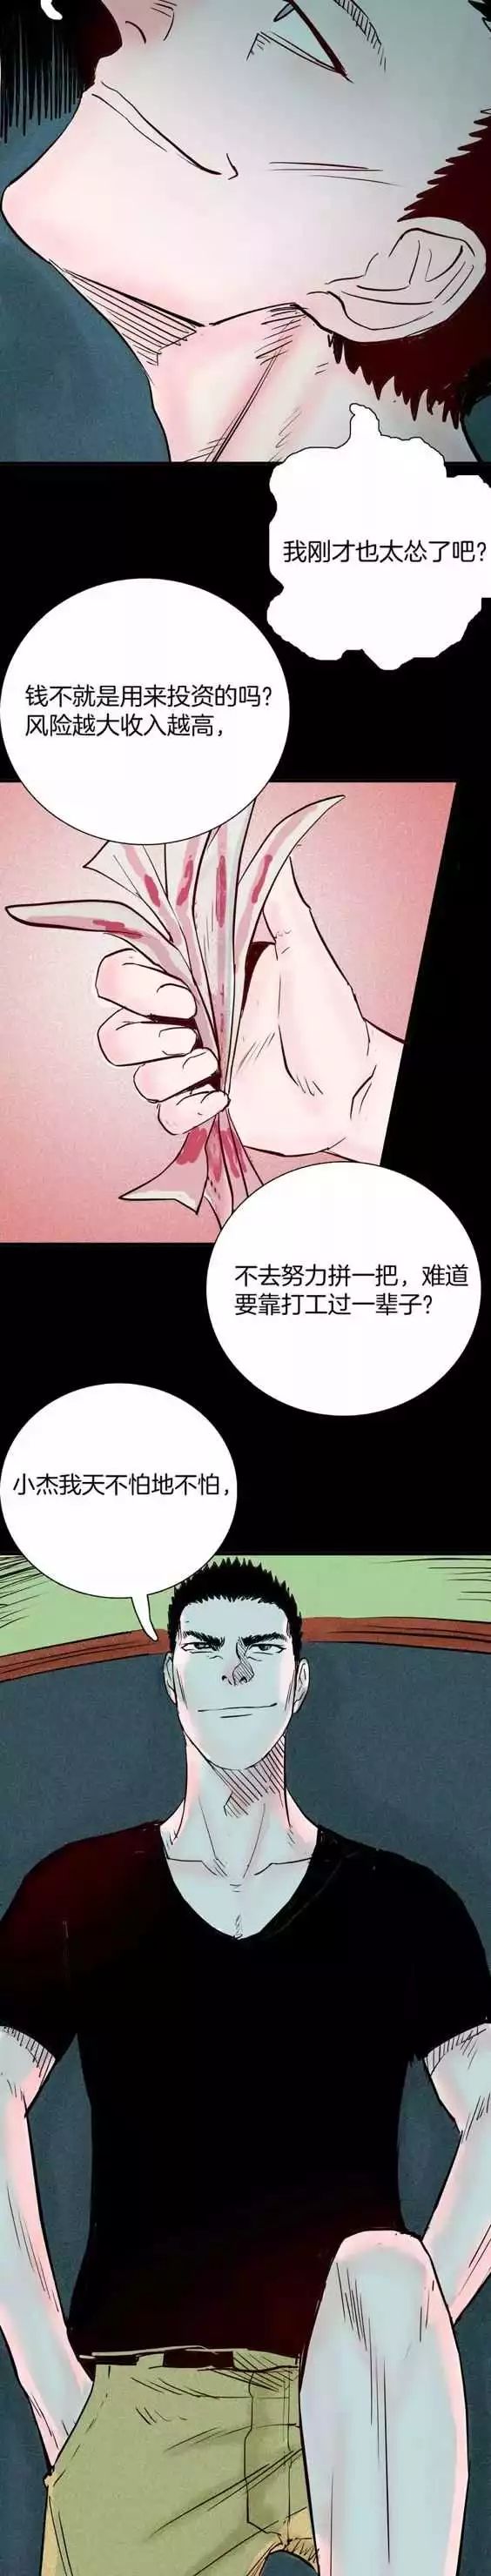 恐怖漫畫丨藥丸 靈異 第31張